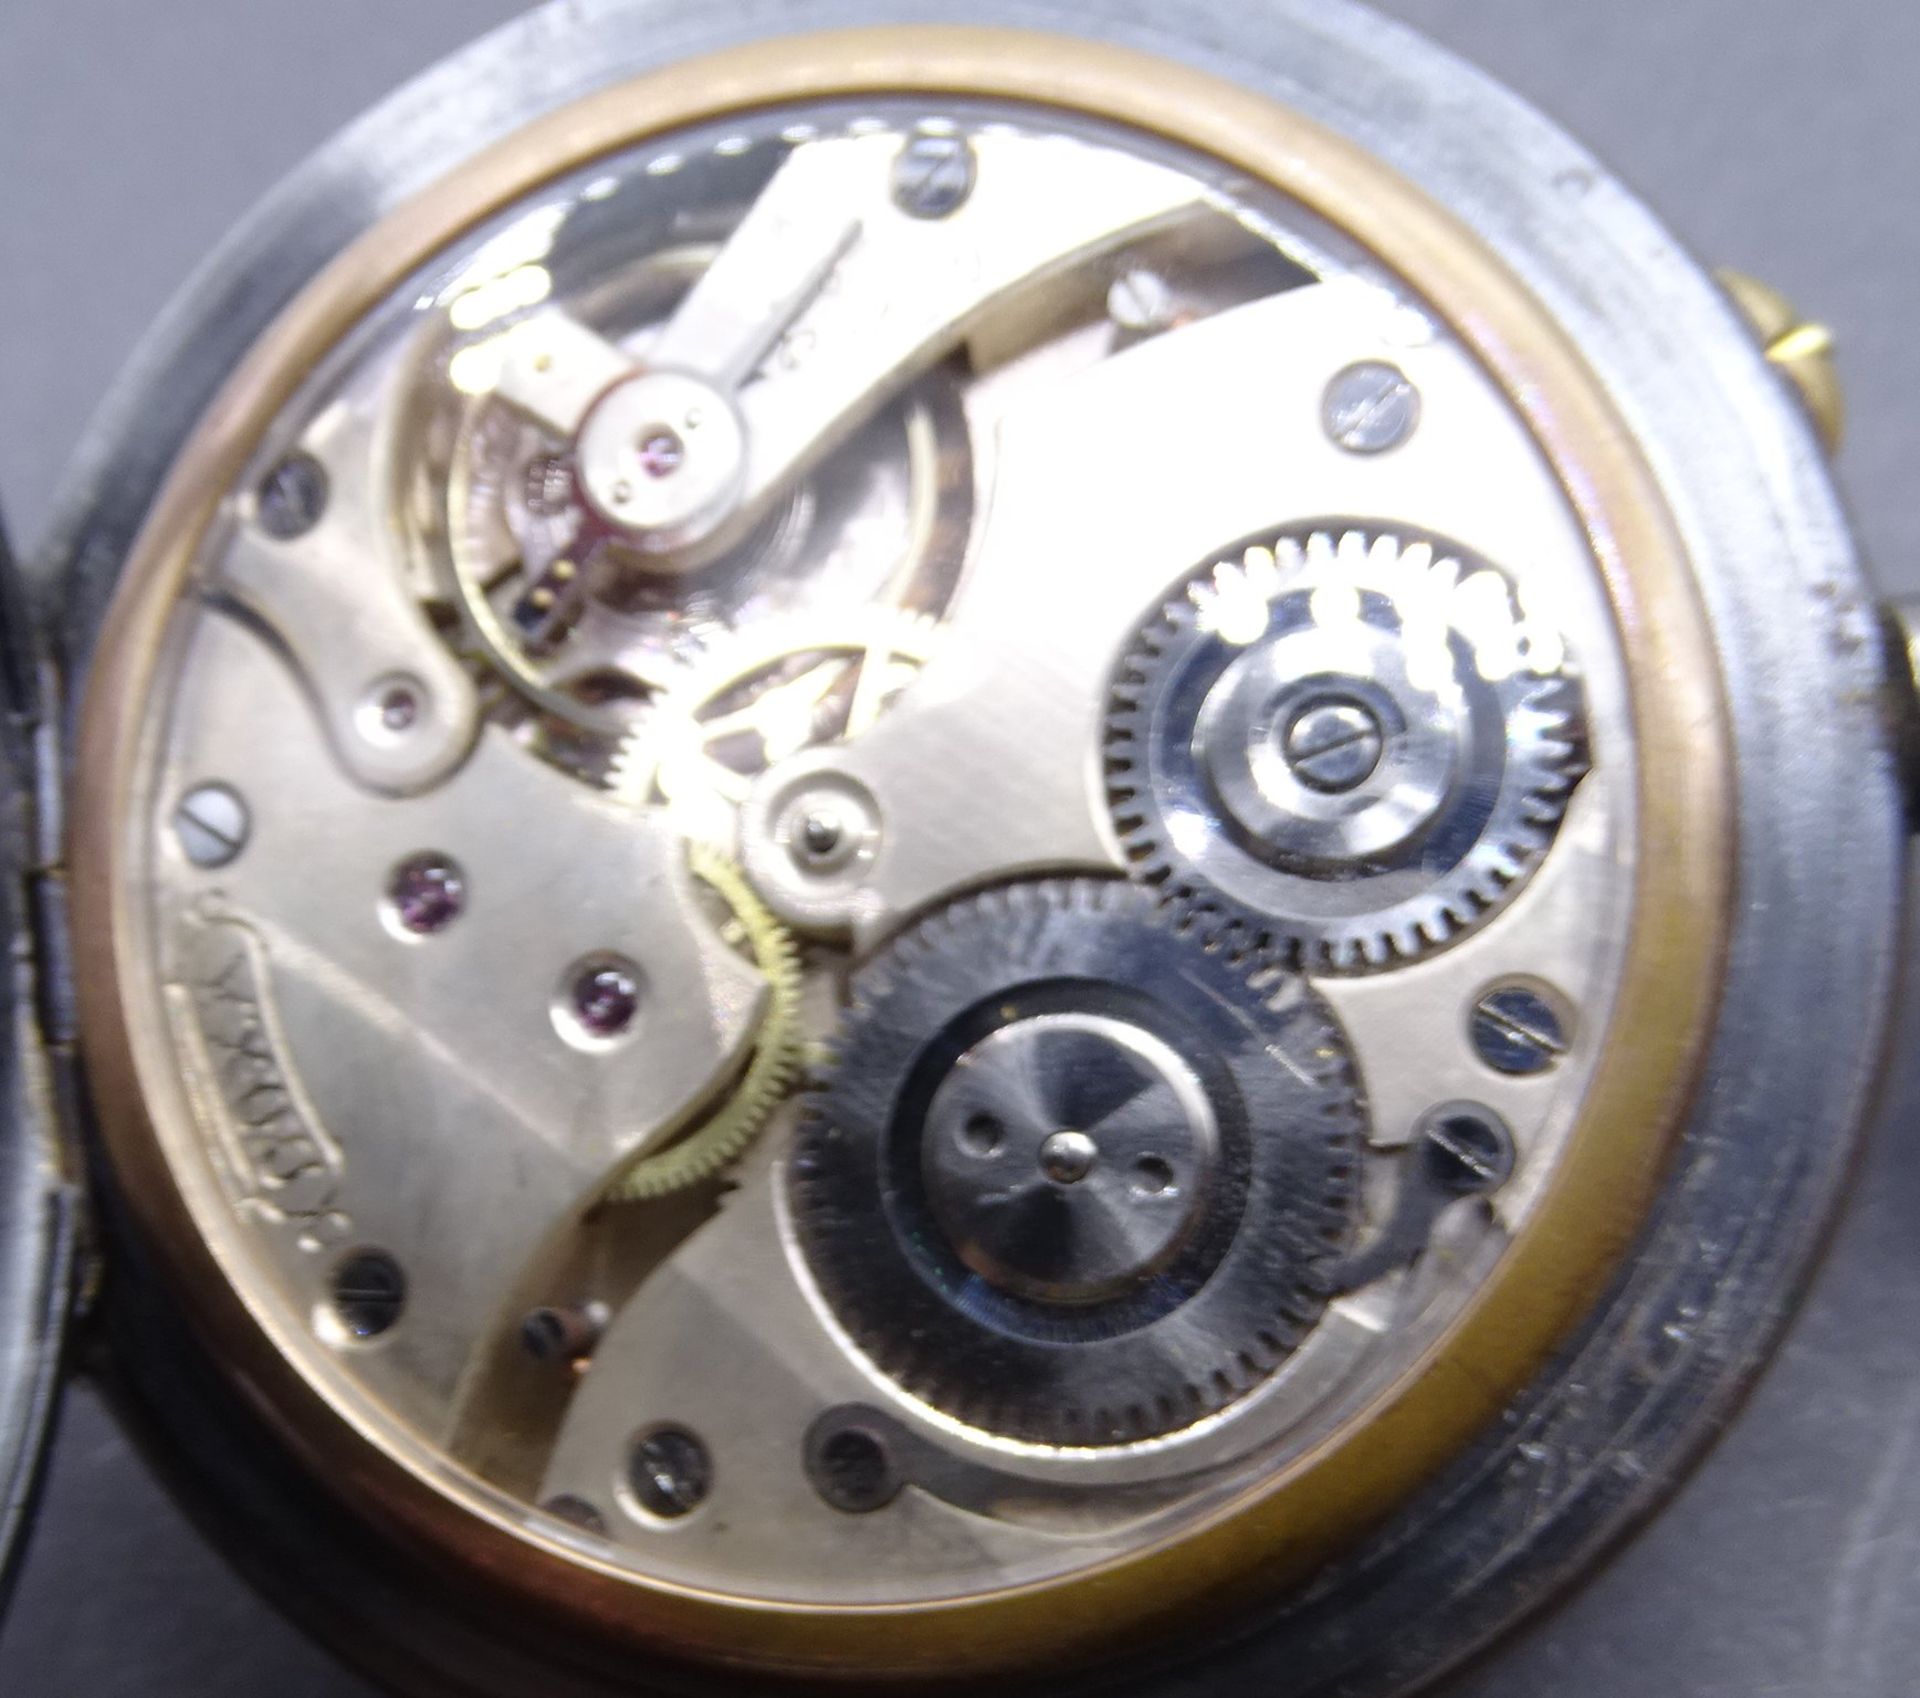 grosse Taschenuhr "Doxa" Metallgehäuse. Werk mit Glas-Staubdeckel, Uhrenglas fehlt, Werk läuft, D-7 - Bild 5 aus 5